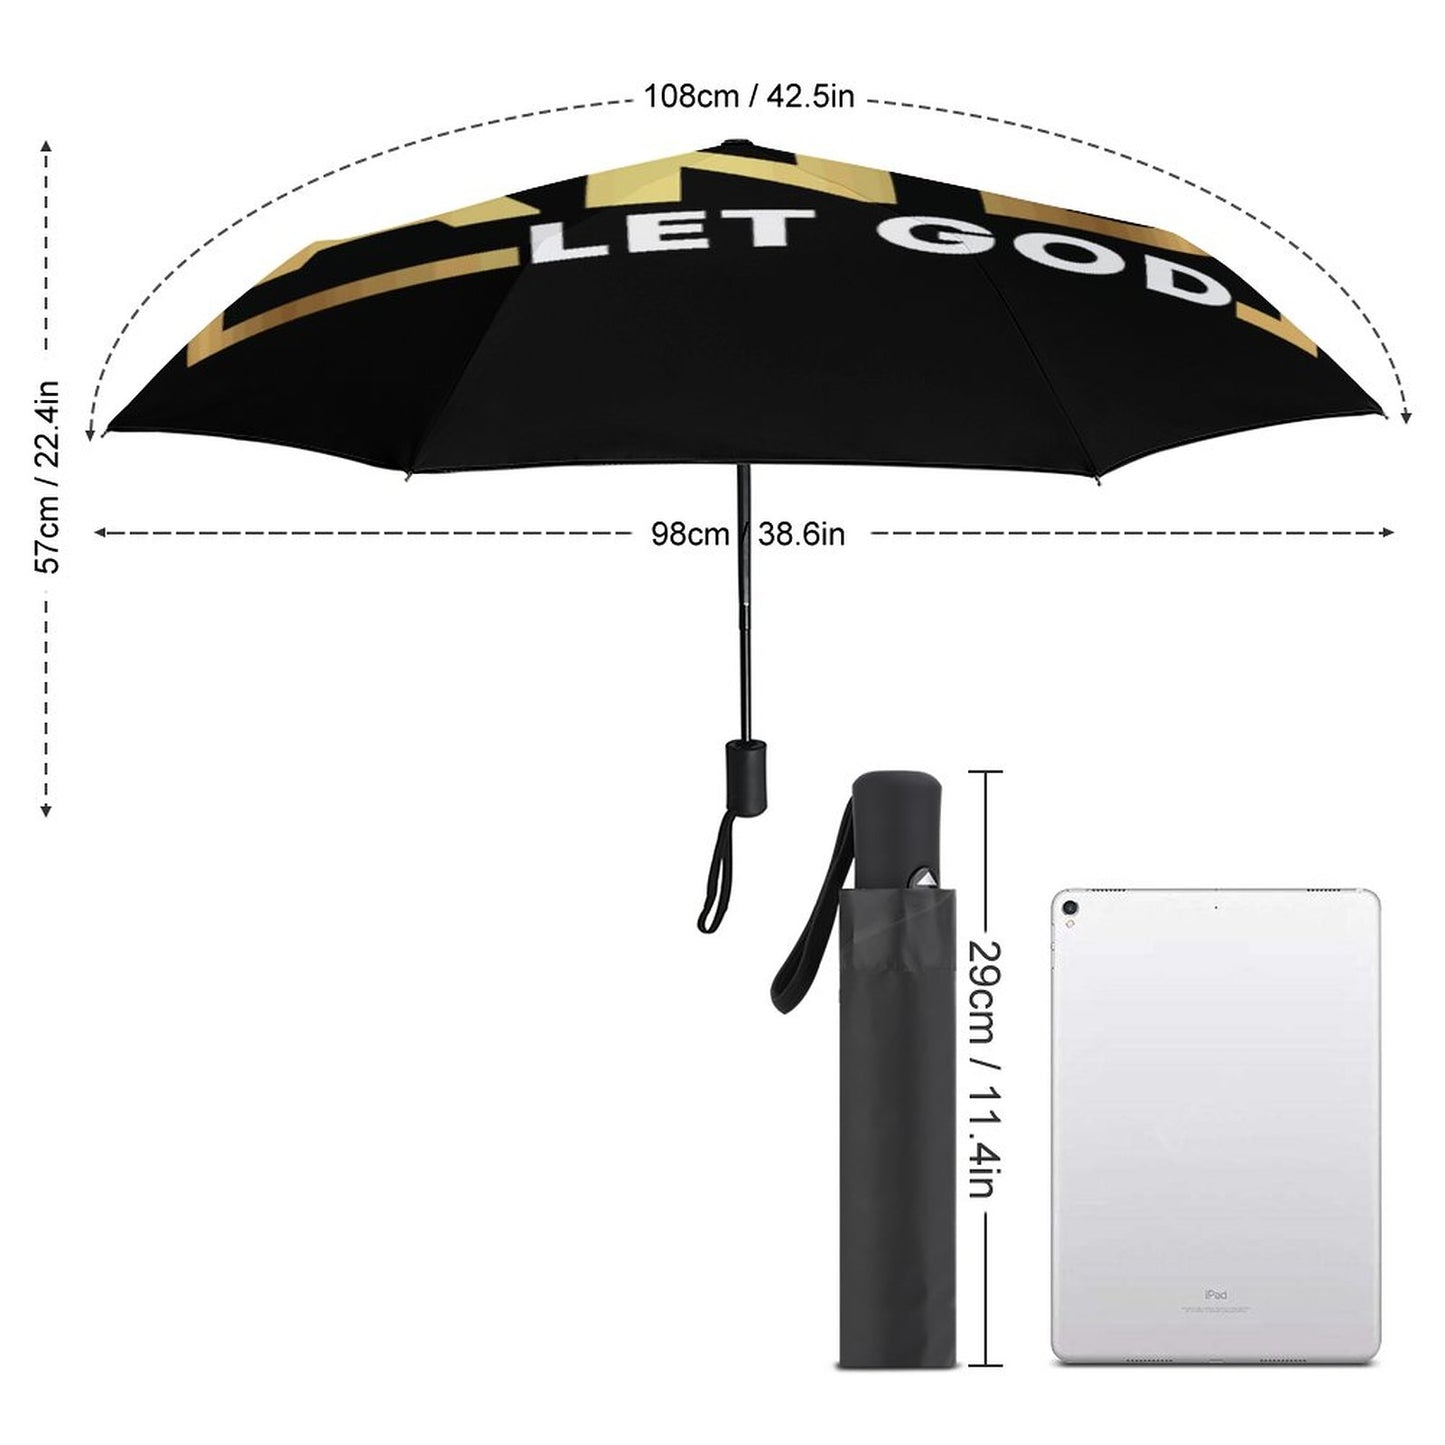 Let Go And Let God Christian Umbrella